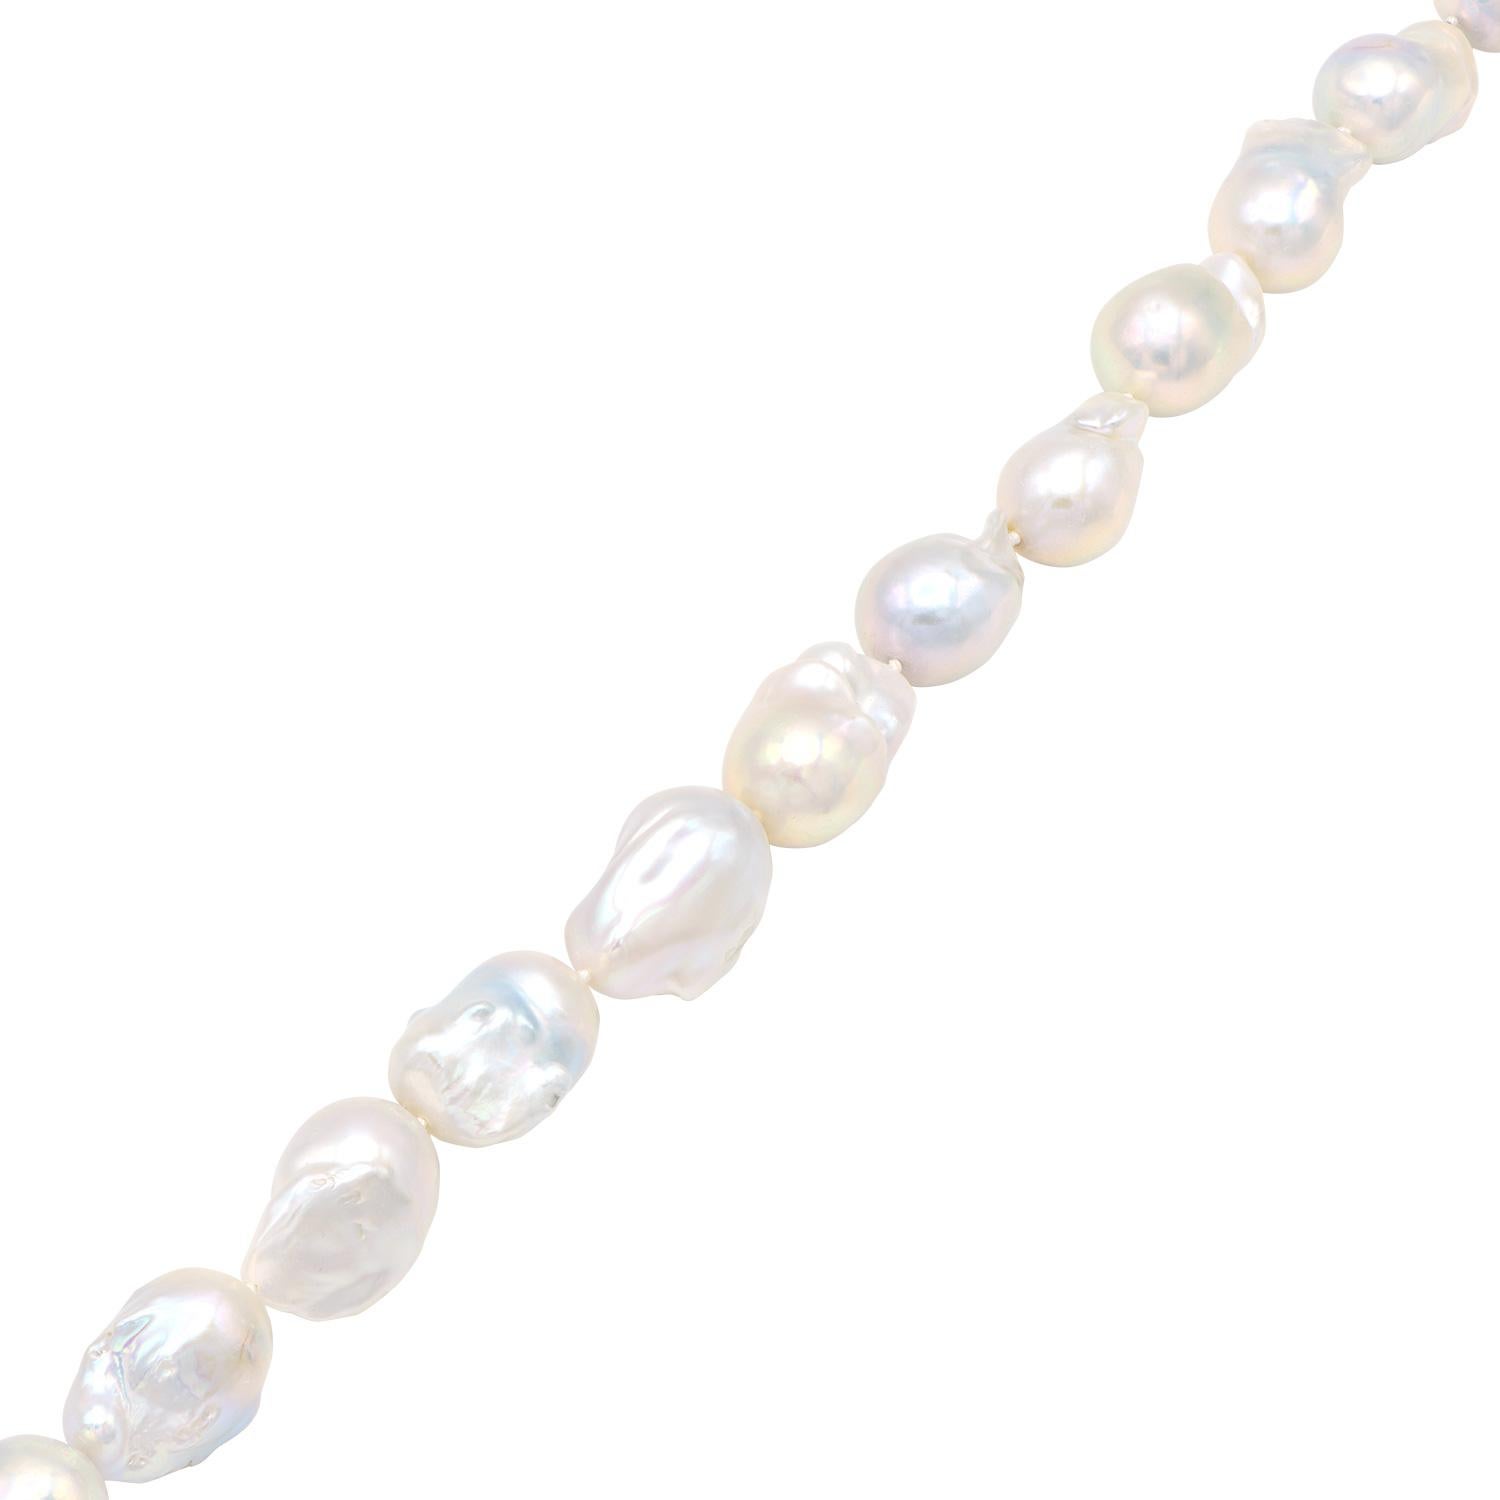 Diese einzigartige und wunderschöne Halskette besteht aus großen 18-22 mm großen barocken weißen Süßwasserperlen. Jede Perle hat ihren eigenen einzigartigen Glanz und ihre eigene Form, die aus 16 Perlen besteht. Diese Kette wird fachmännisch mit